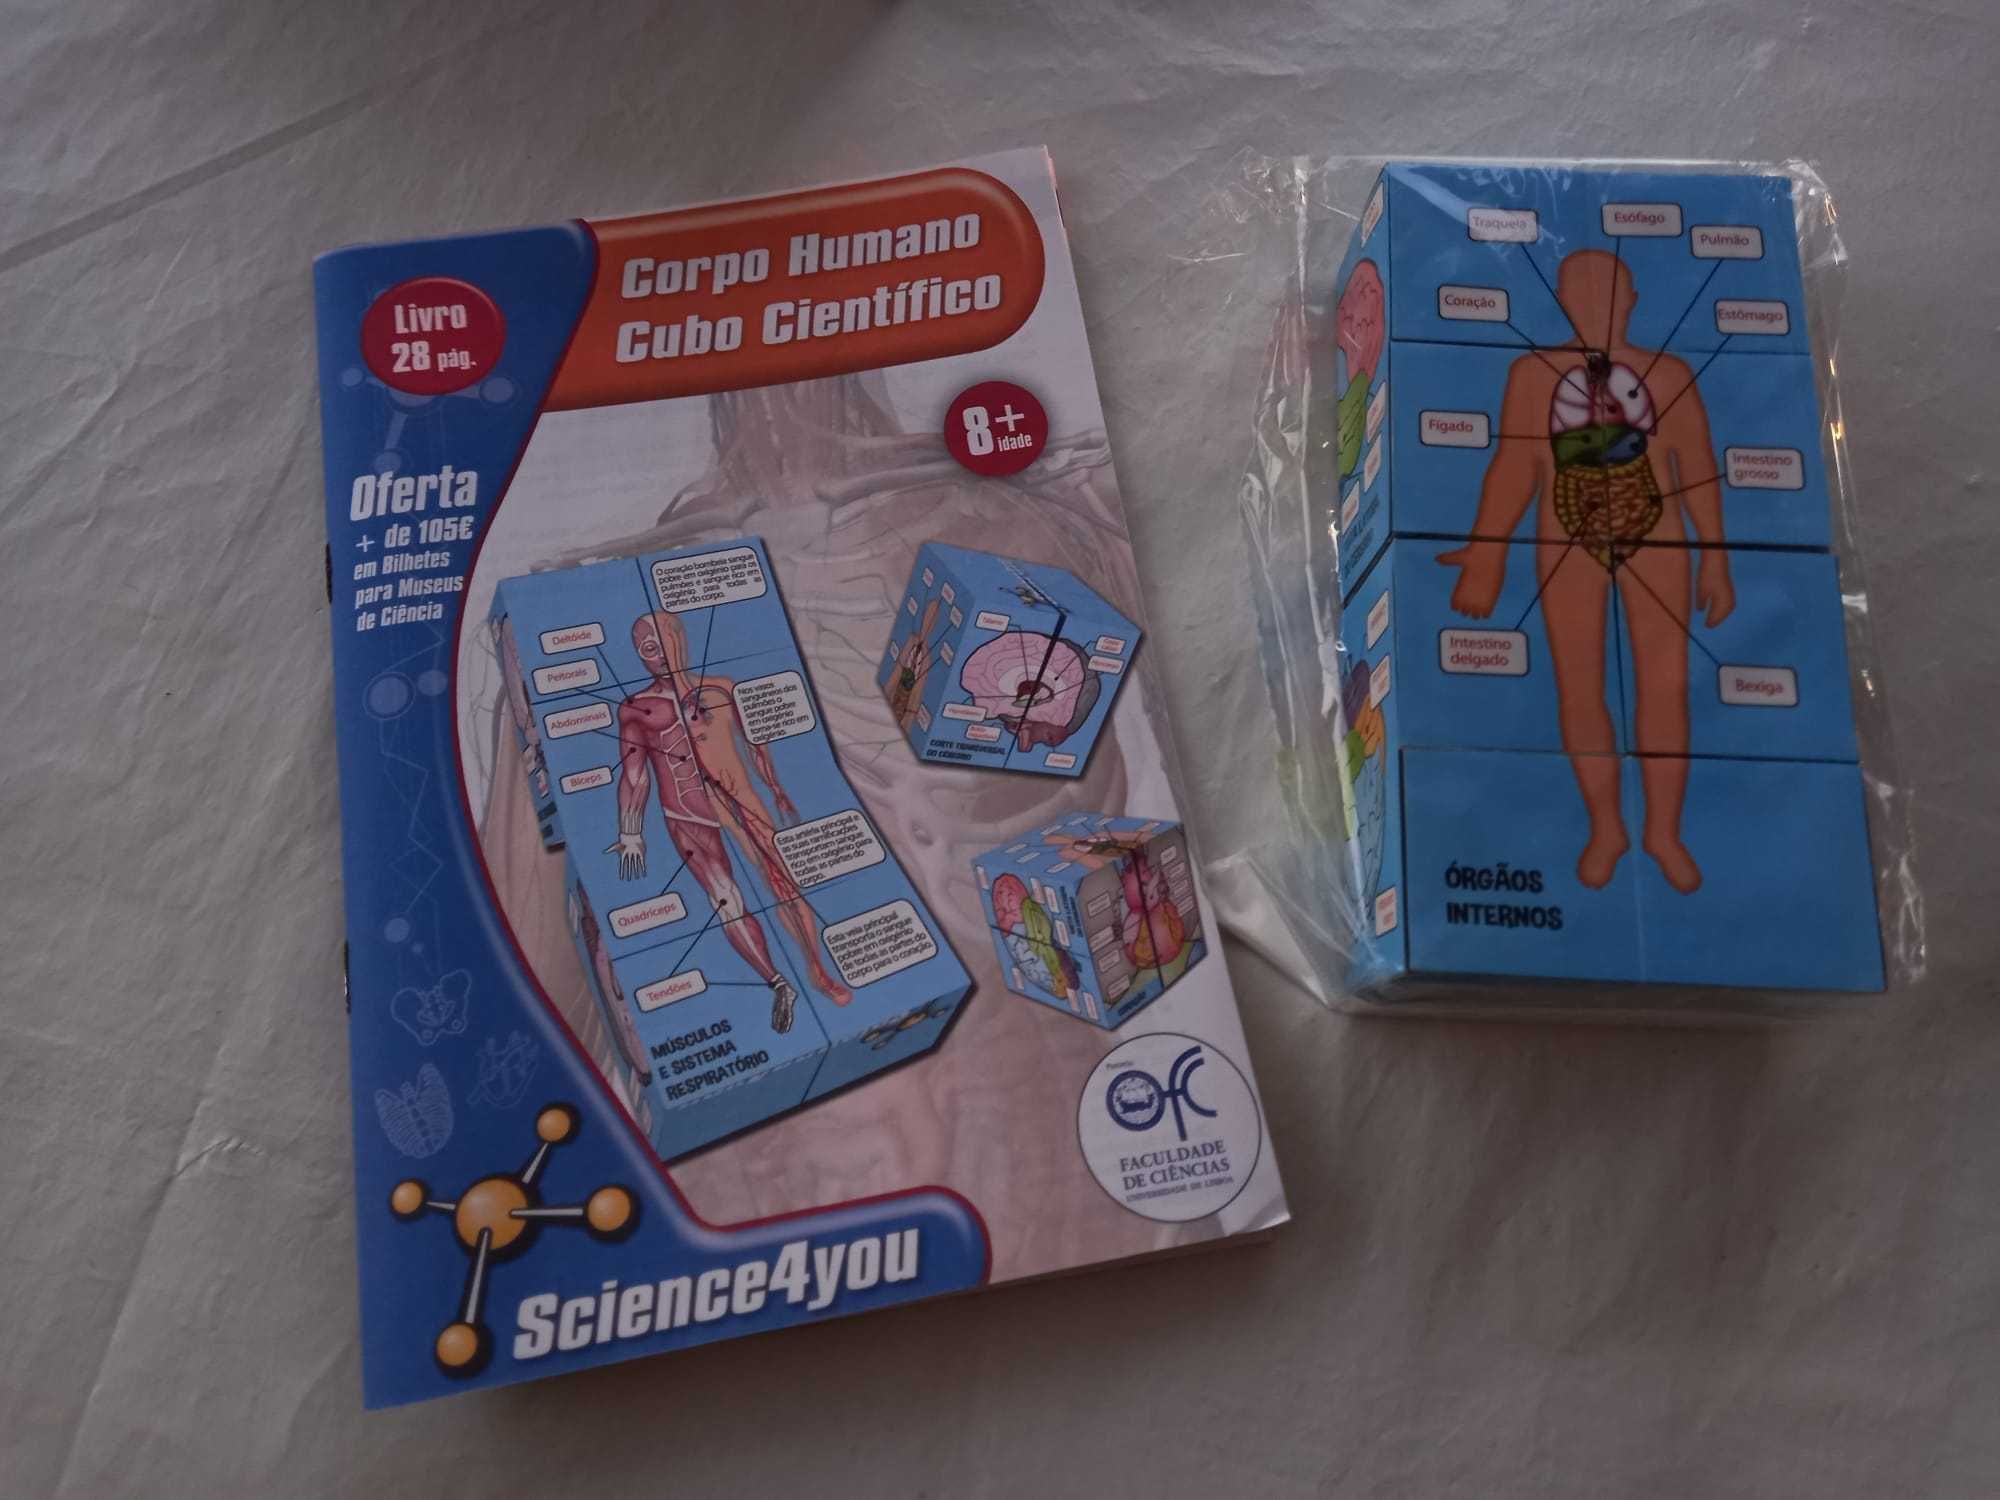 Brinquedo / CUBO Científico Corpo Humano SCIENCE 4 YOU